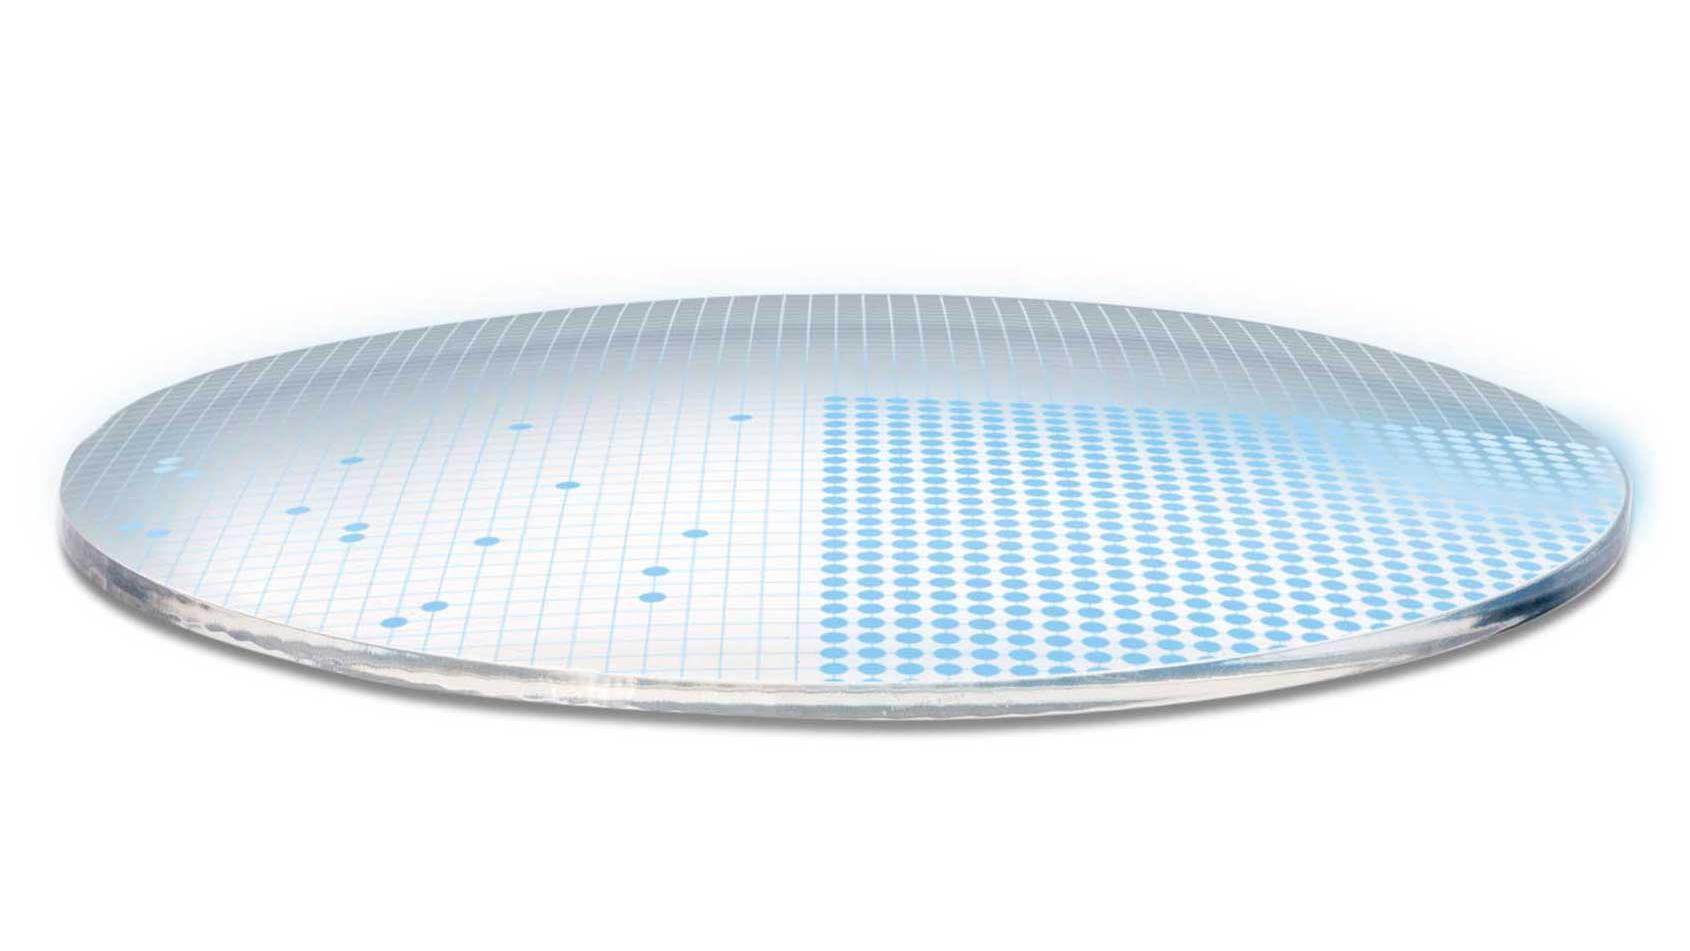 3D-illustration af brilleglas, der viser 700 blå prikker, der symboliserer 700 frie parametre for en yderst kompleks glasoverflade.